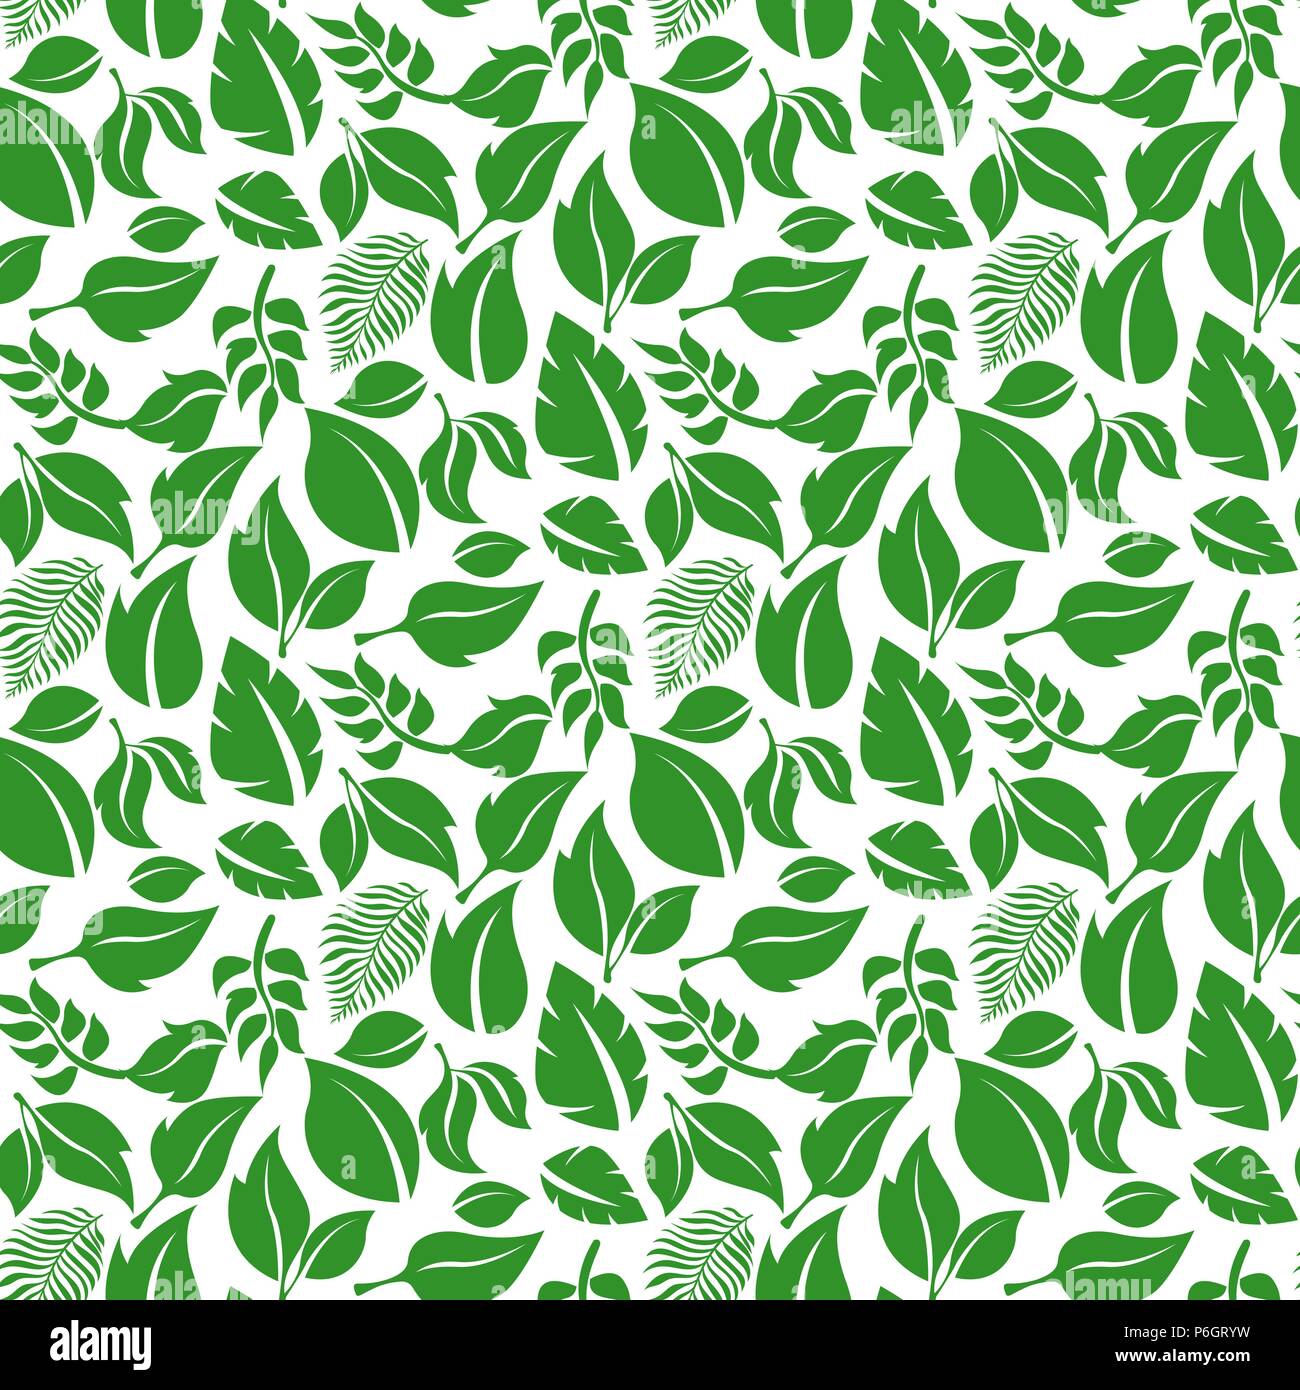 Motif de feuilles vertes. Fond transparent Illustration de Vecteur